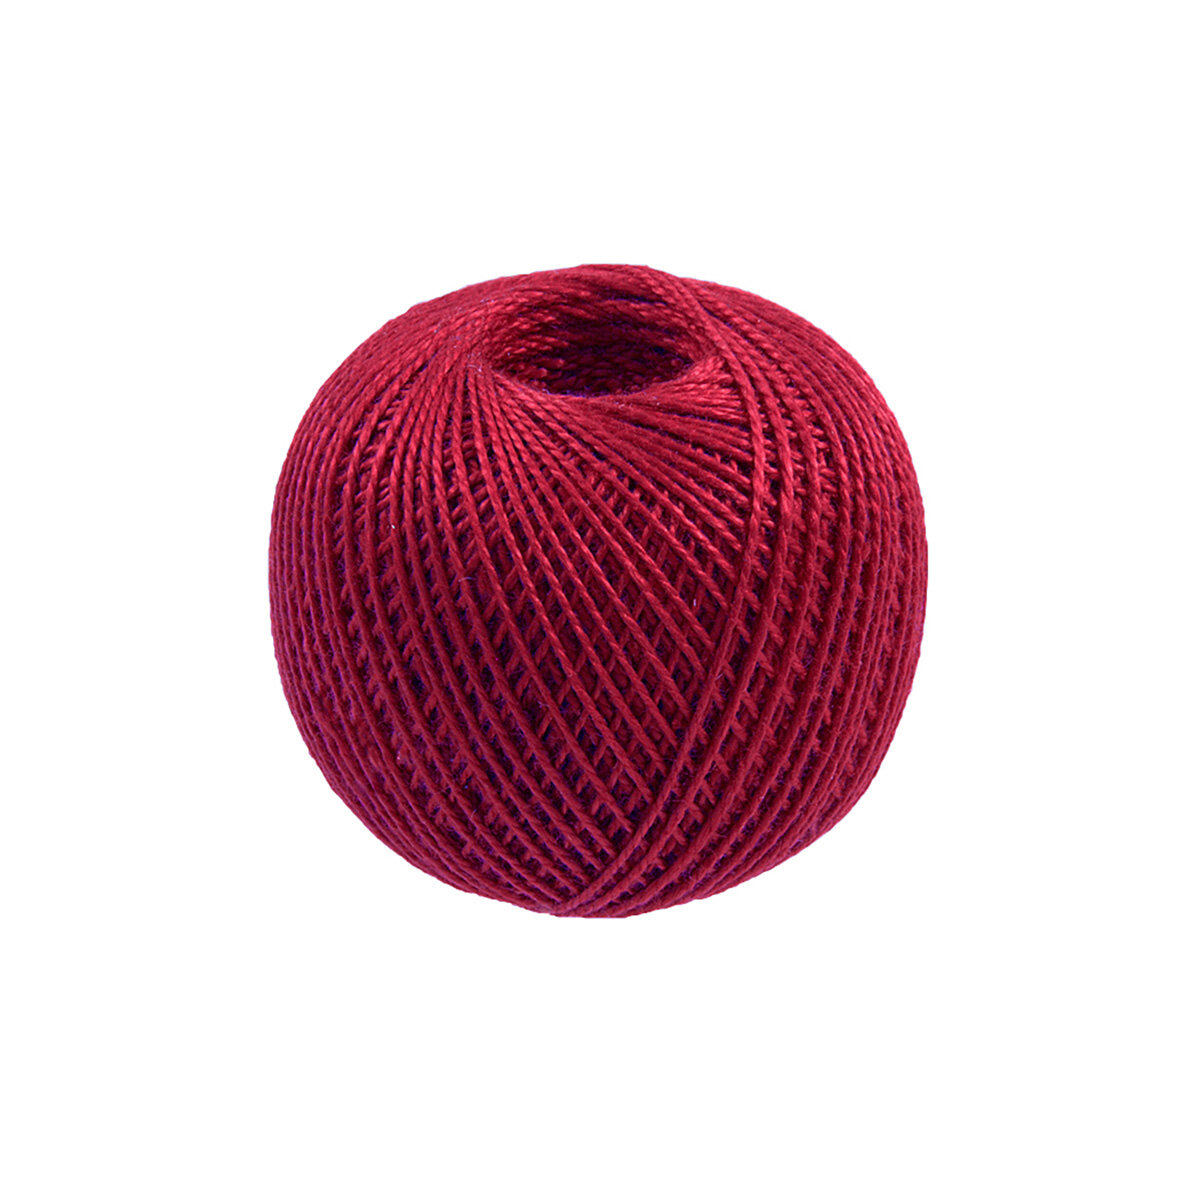 Нитки для вязания и плетения 'ирис' (100% хлопок), 25г, 150м (0810 алый), 20 мотков